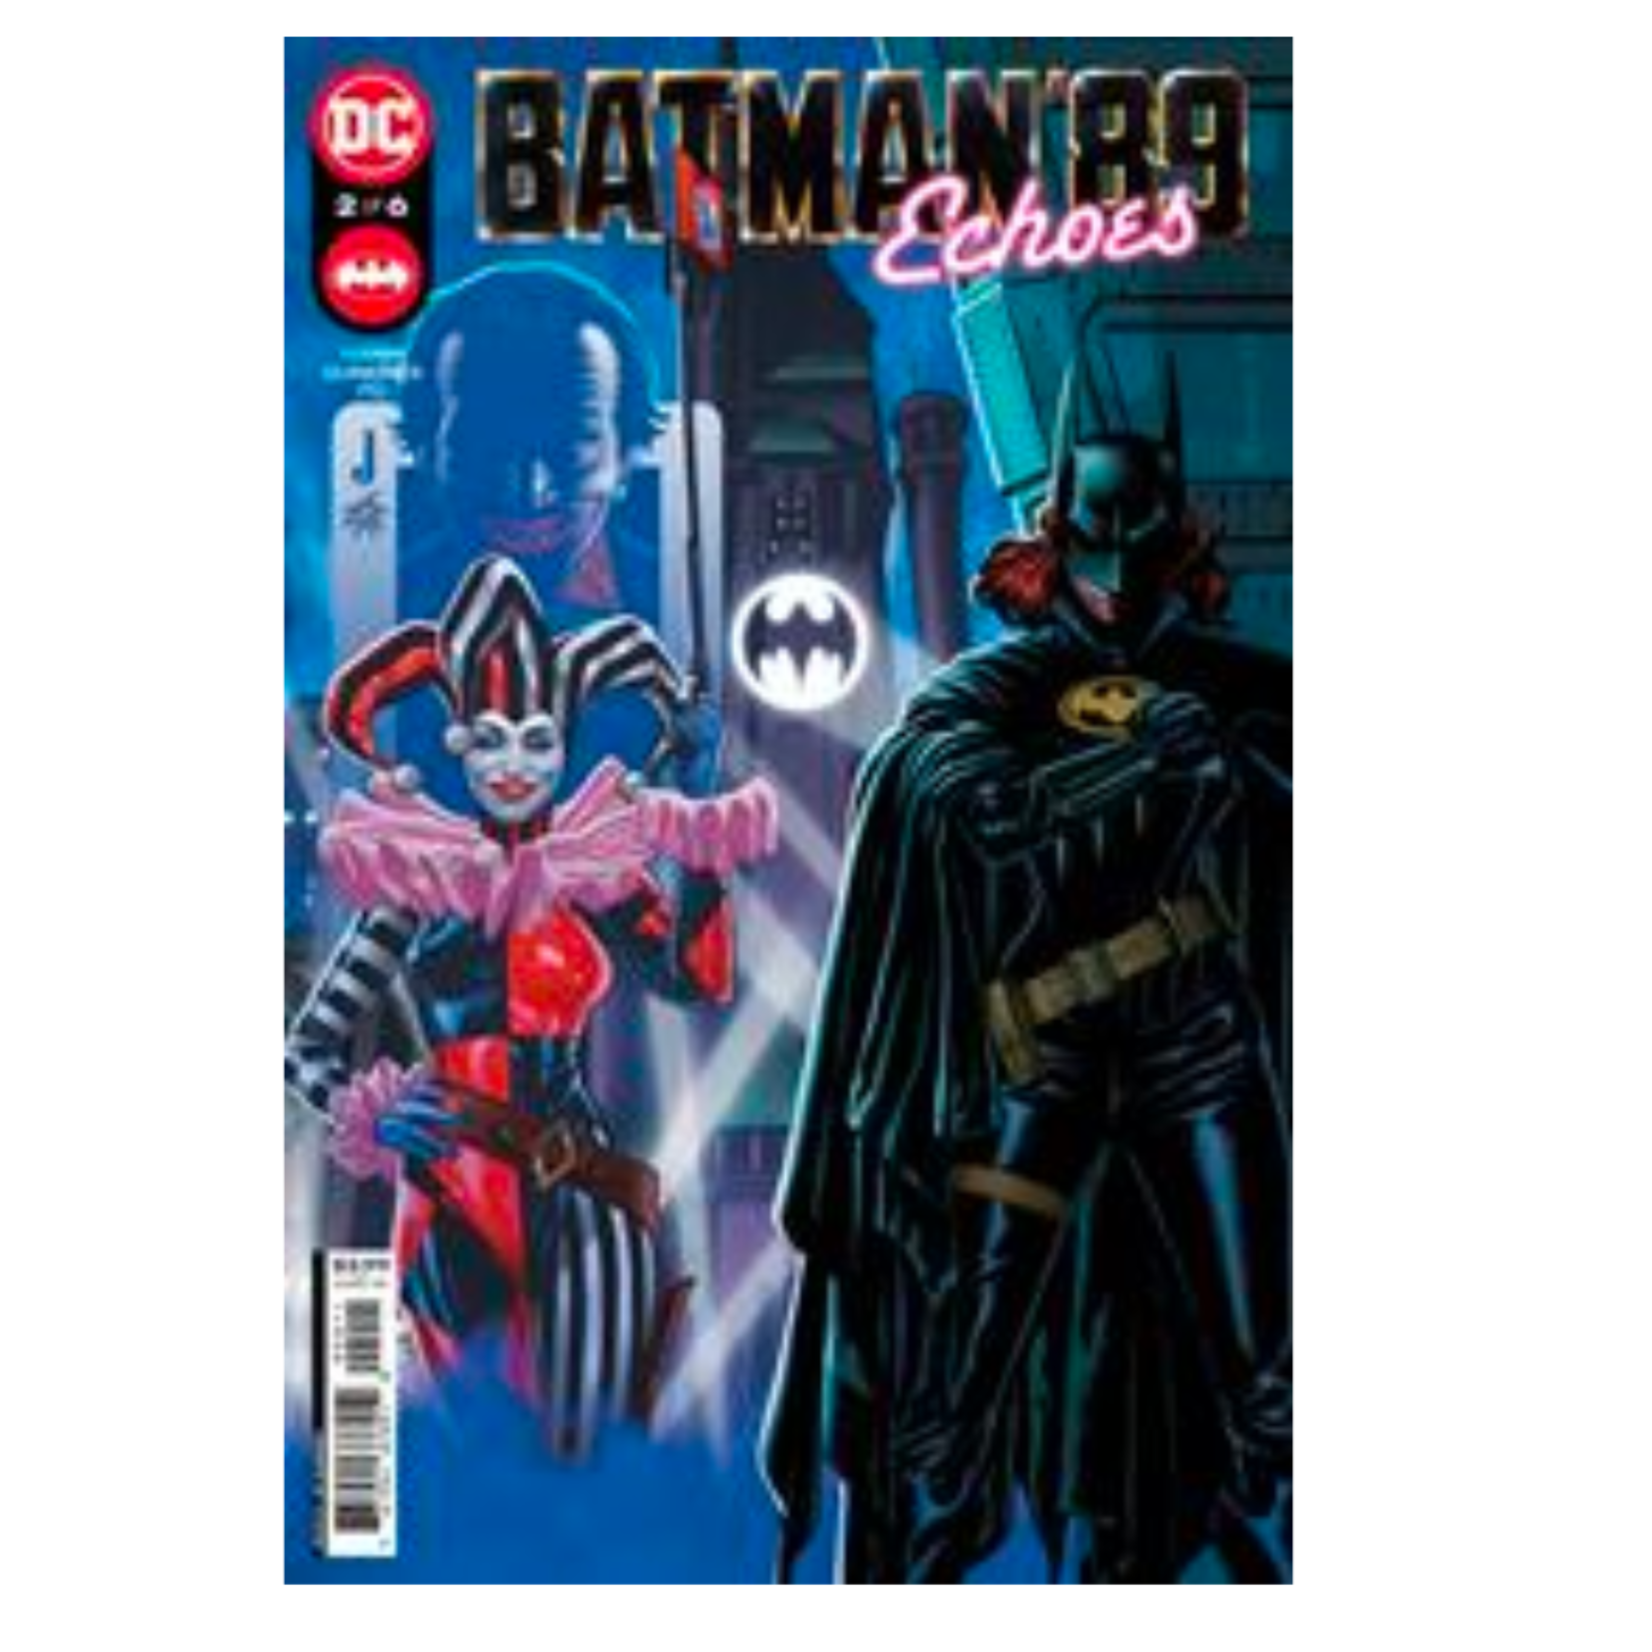 DC Comics Batman 89 Echoes #2 Cvr A Joe Quinones